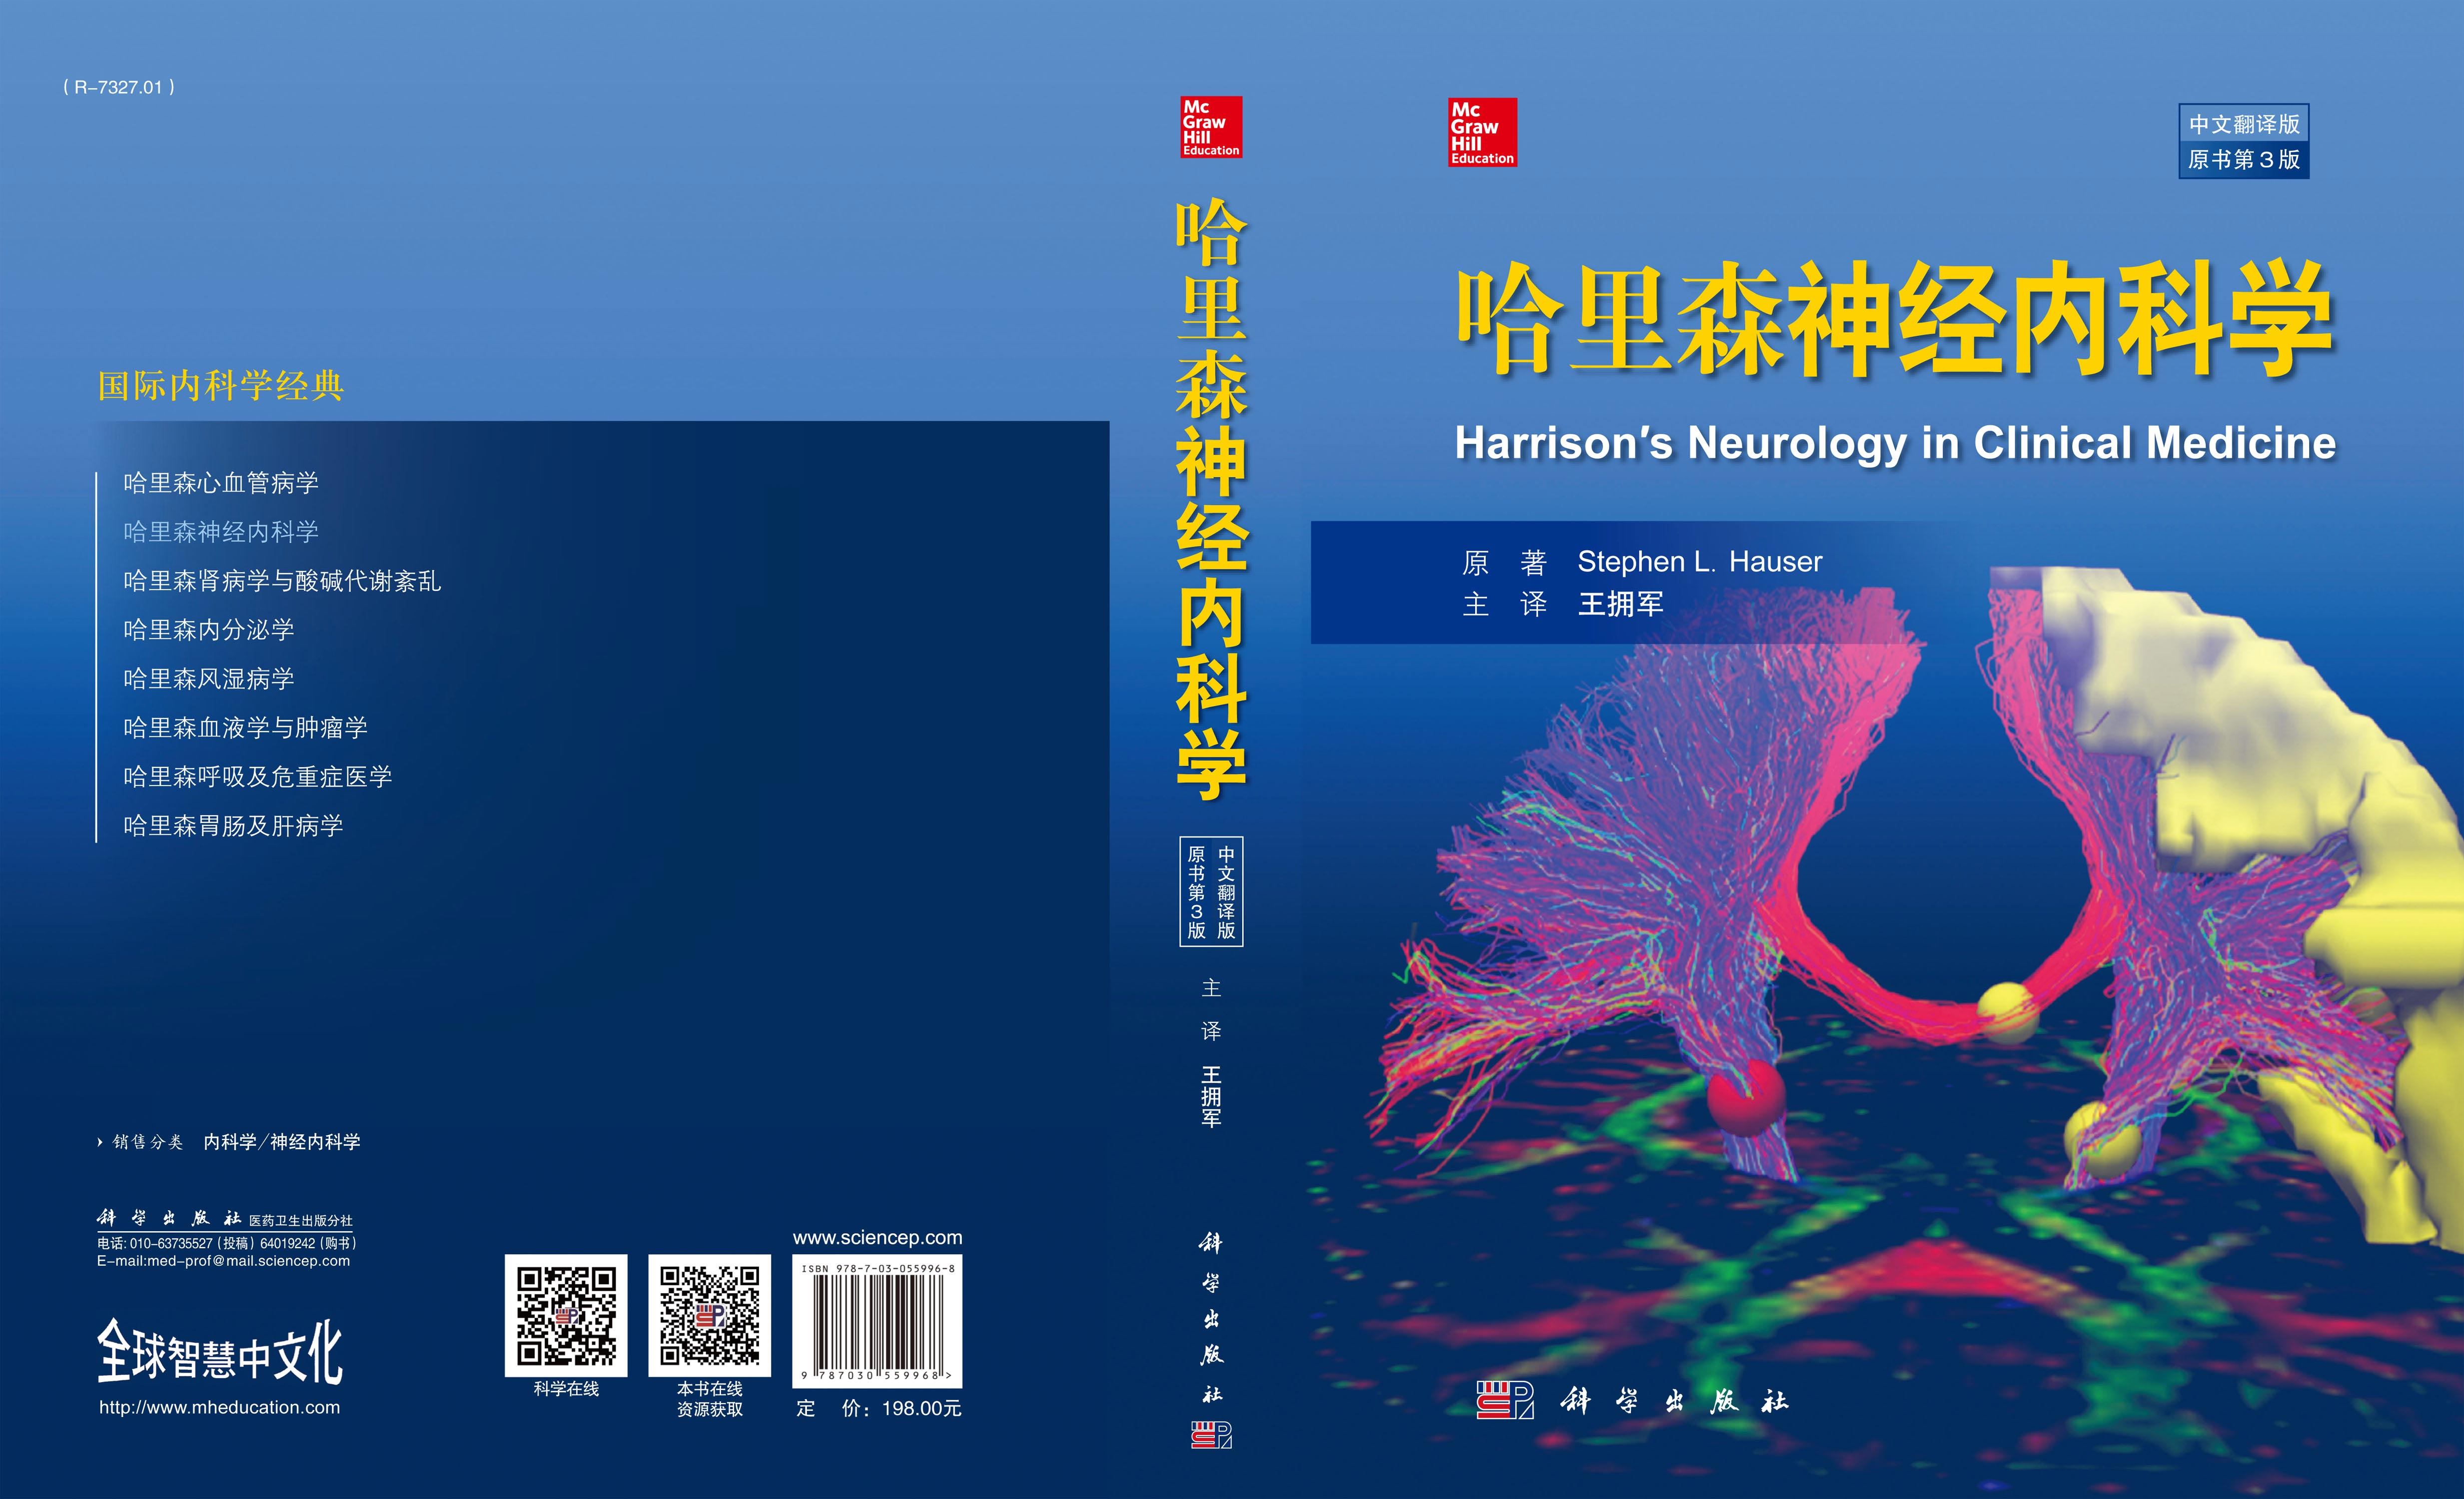 哈里森神经内科学(中文翻译版   原书第3版)